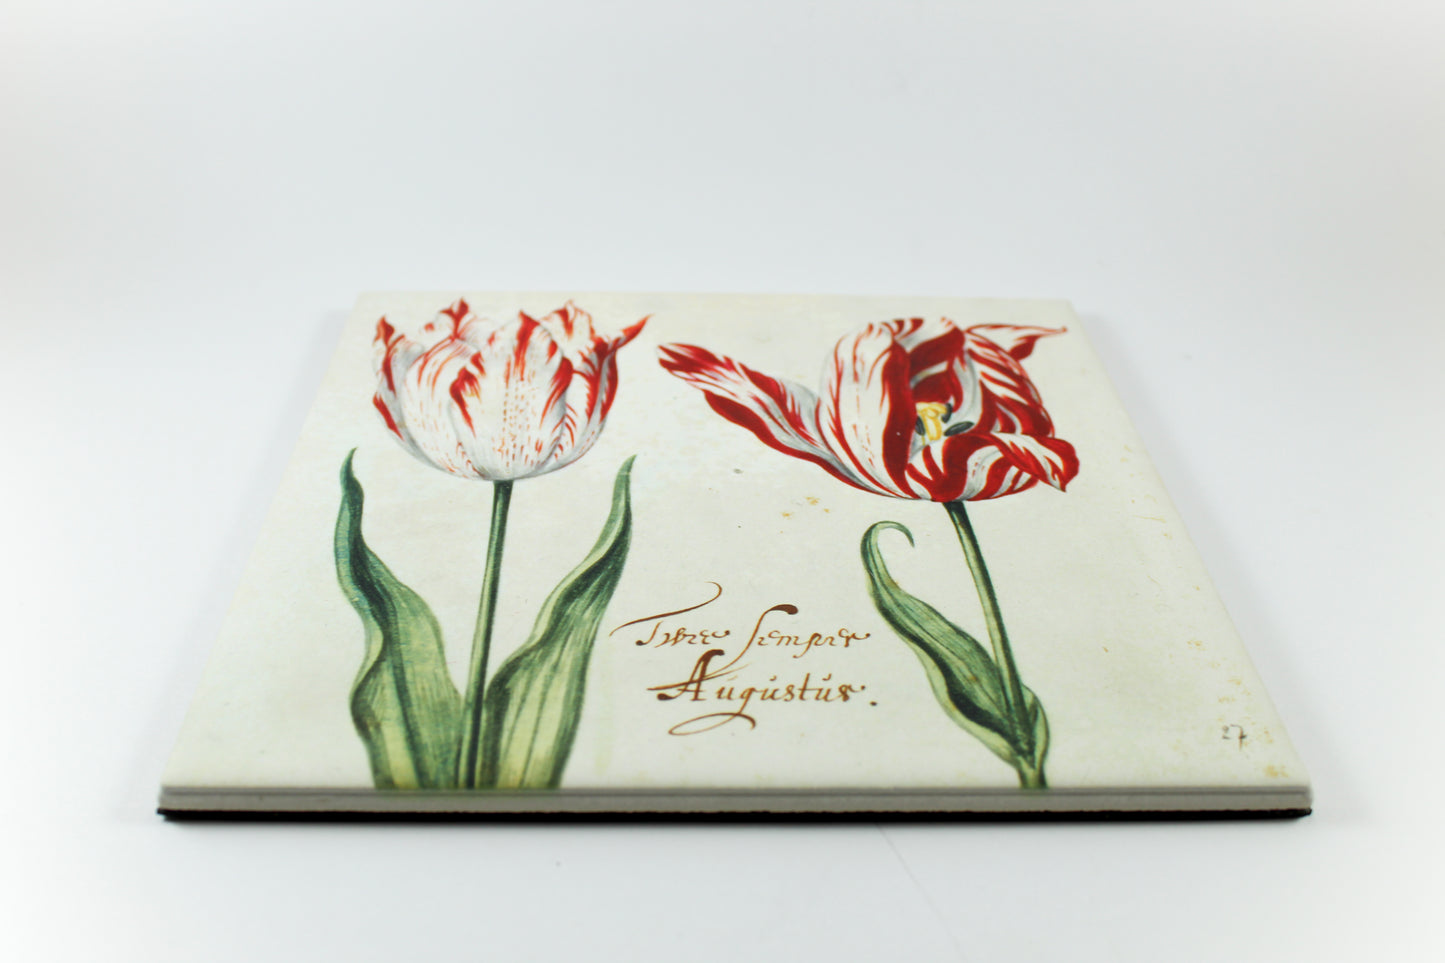 Amsterdam Tulip Museum Semper Augustus Tulip On White Ceramic Hot Plate Trivet Table Mat